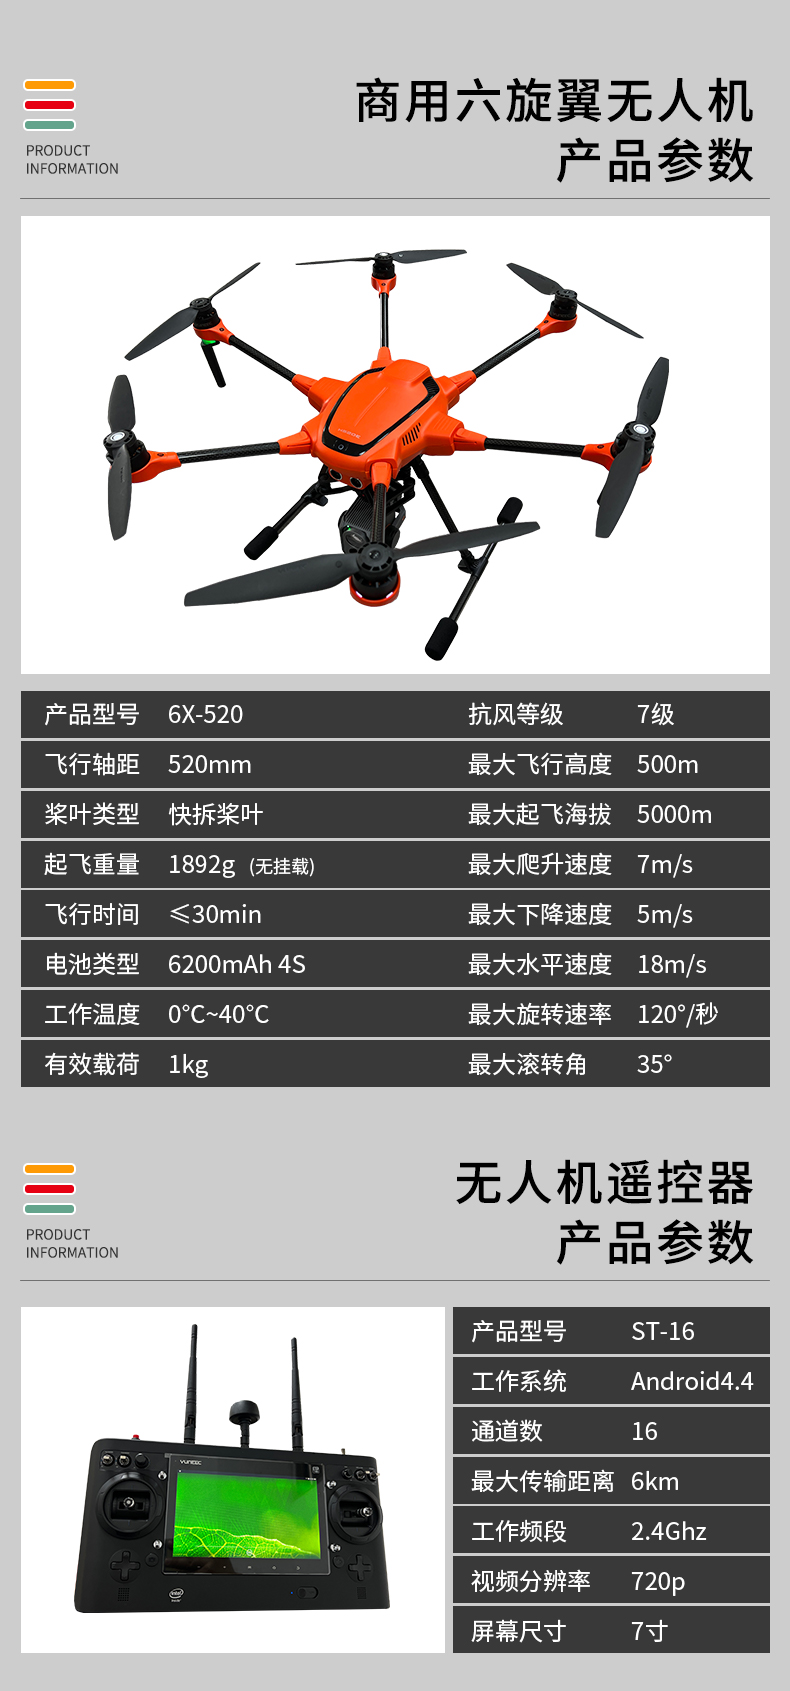 商用无人机6x-520(图2)